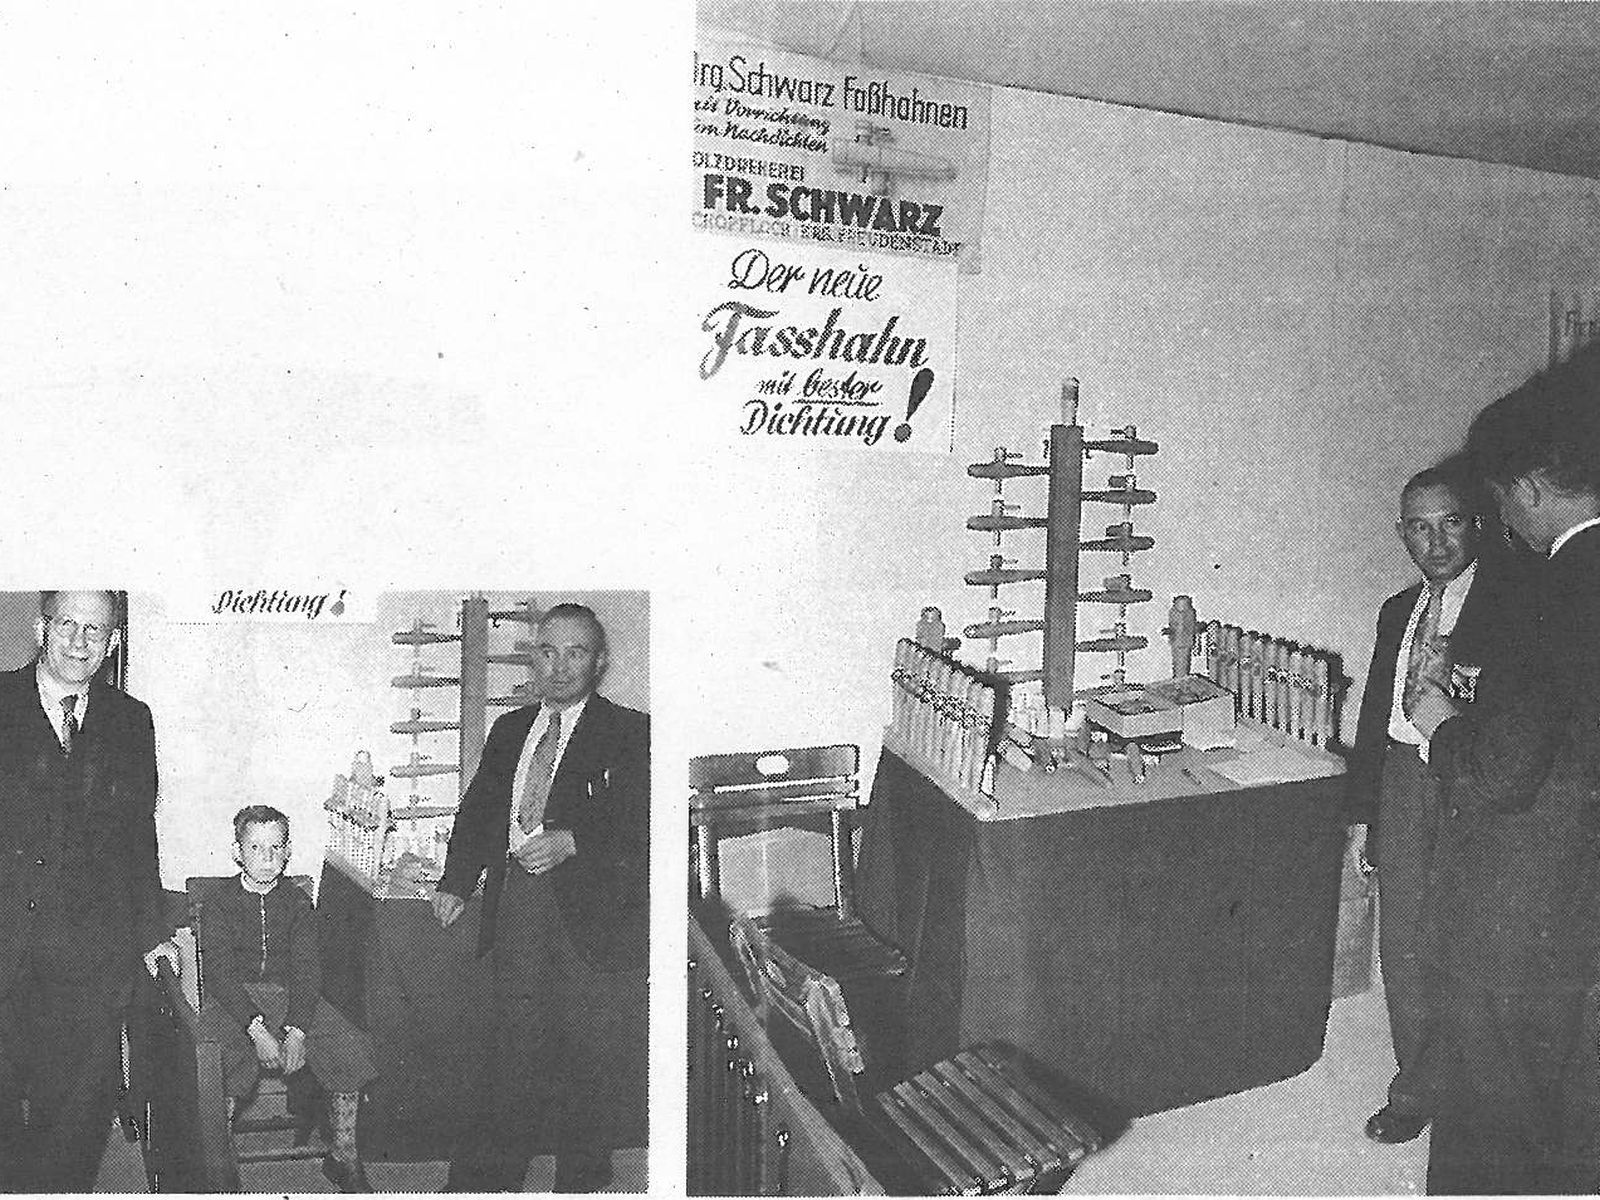  Schopflocher Skizzen Friedrich Schwarz 1956 auf einer Ausstellung in Frankfurt - Bild wird mit einem Klick vergrößert 